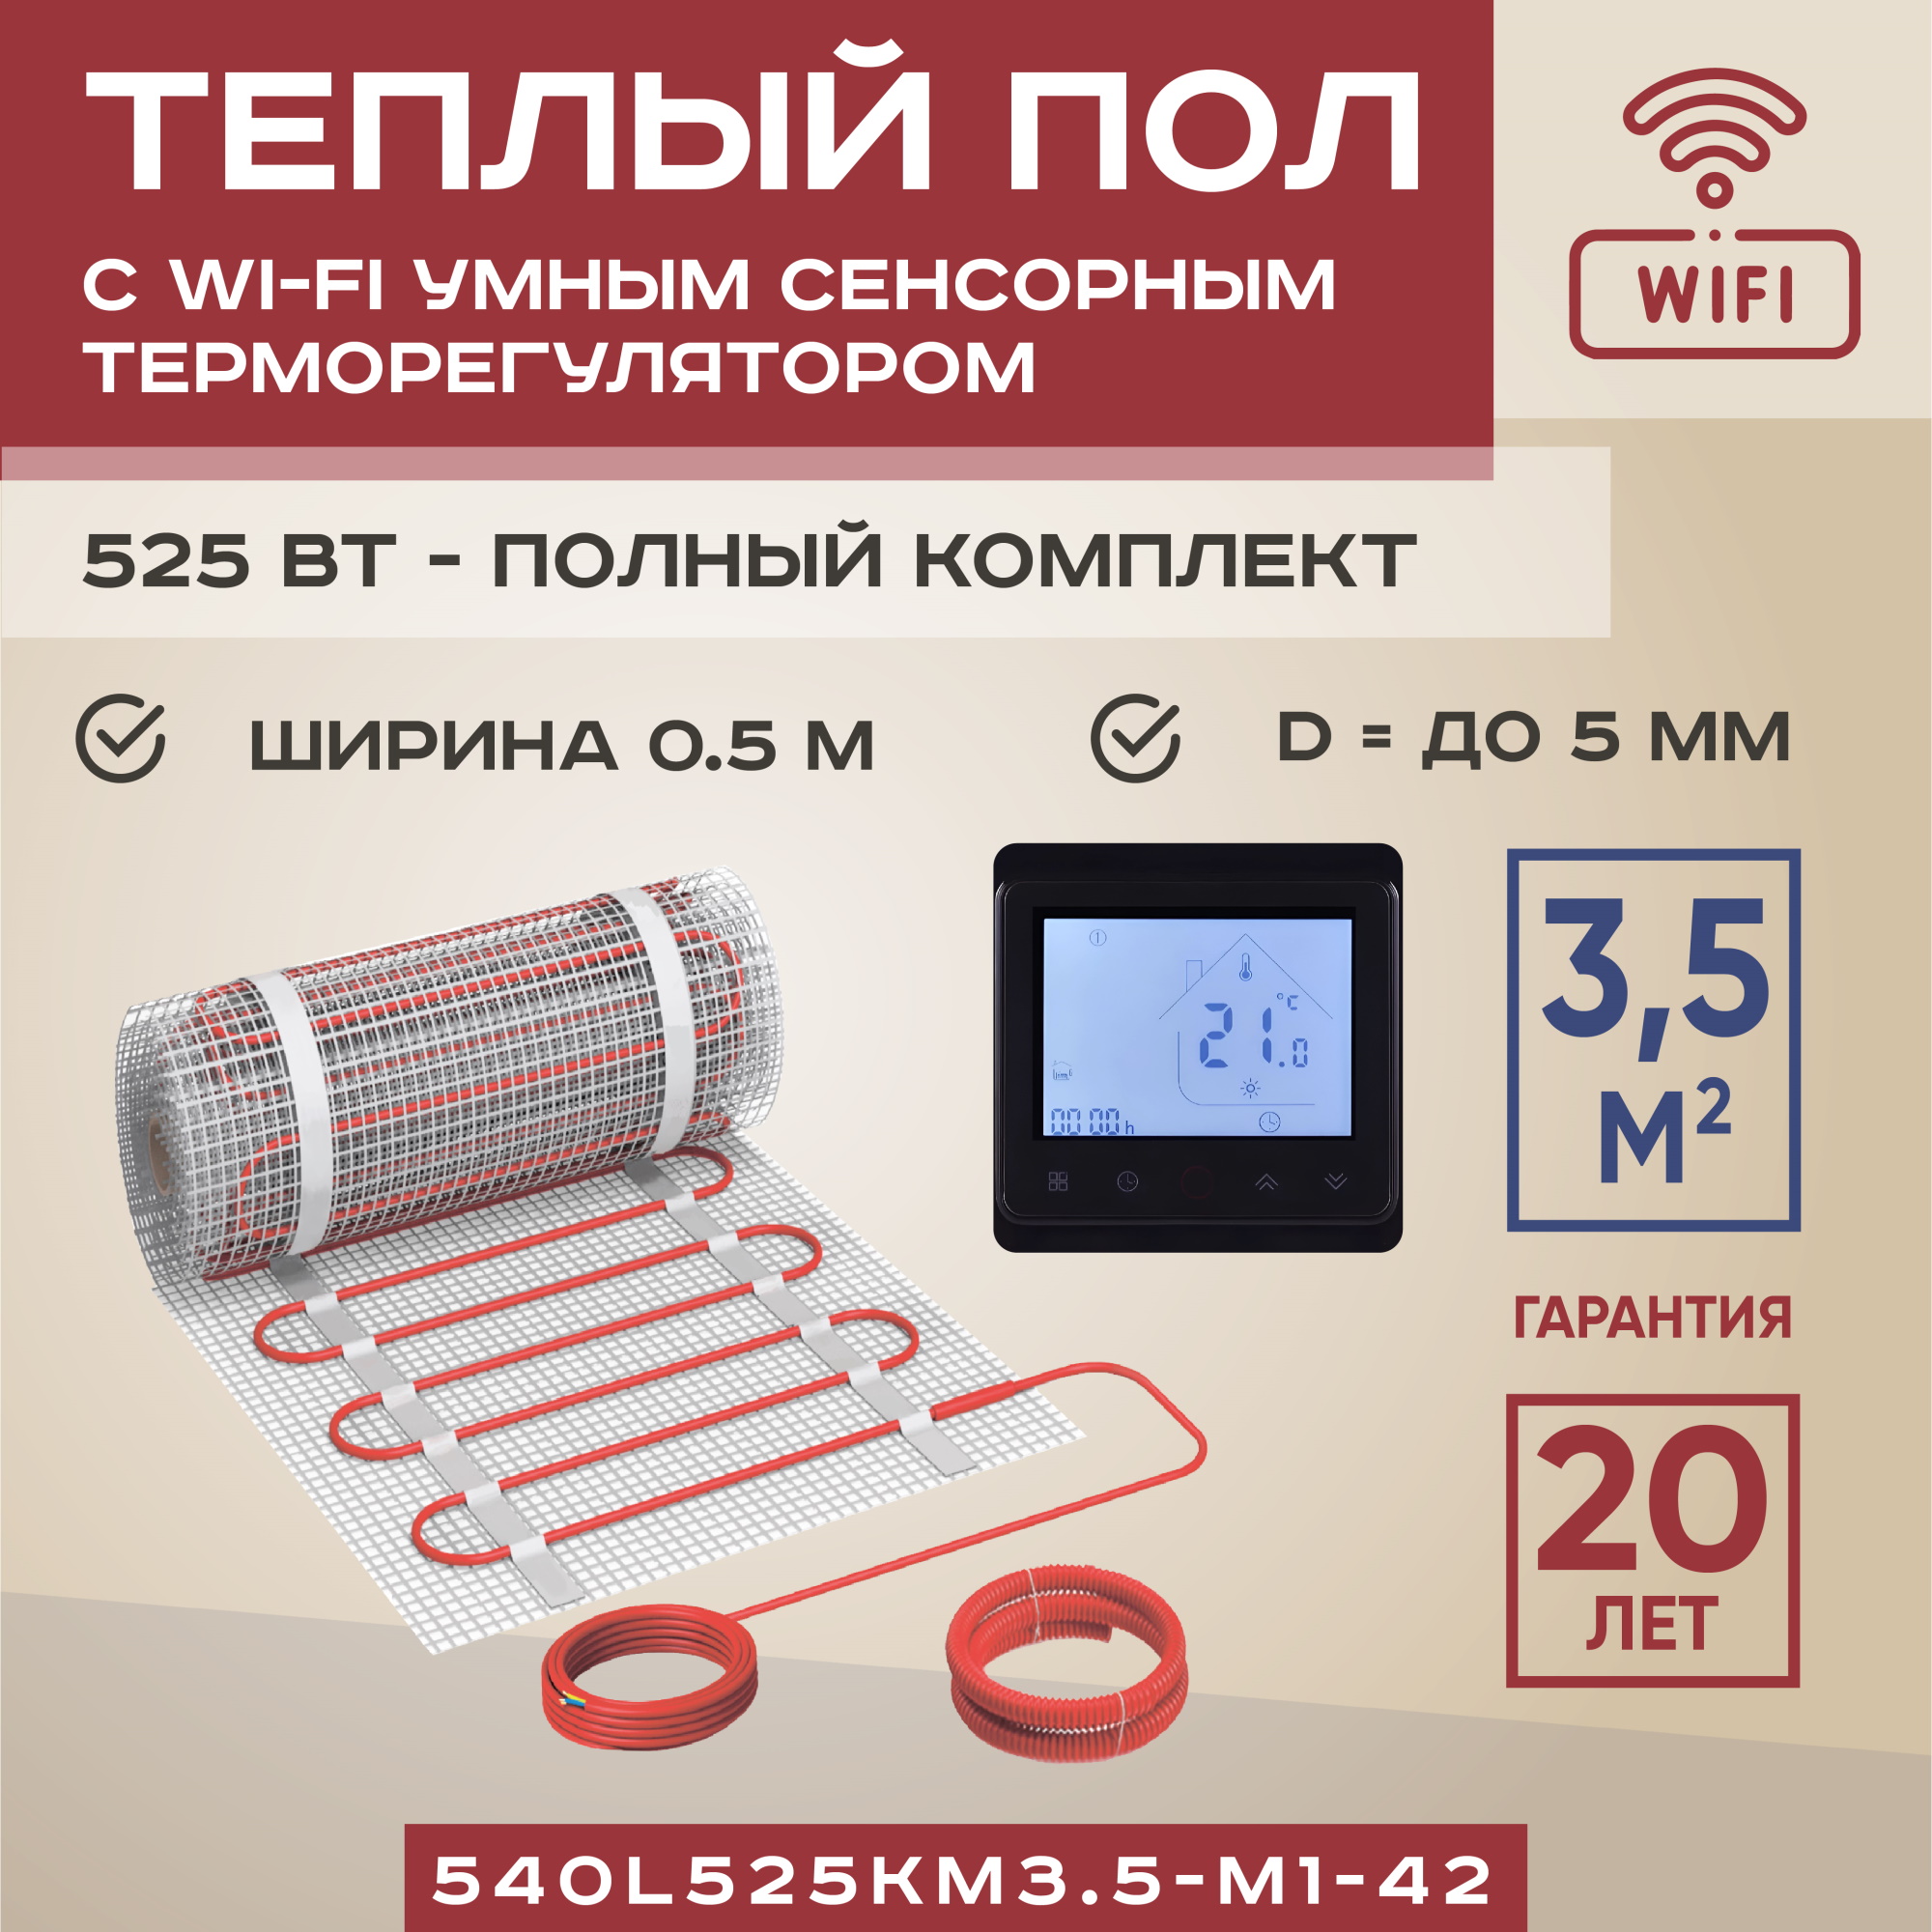 Теплый пол Vimarr L 3.5 м2 525 Вт с черным WiFi программируемым сенсорным терморегулятором